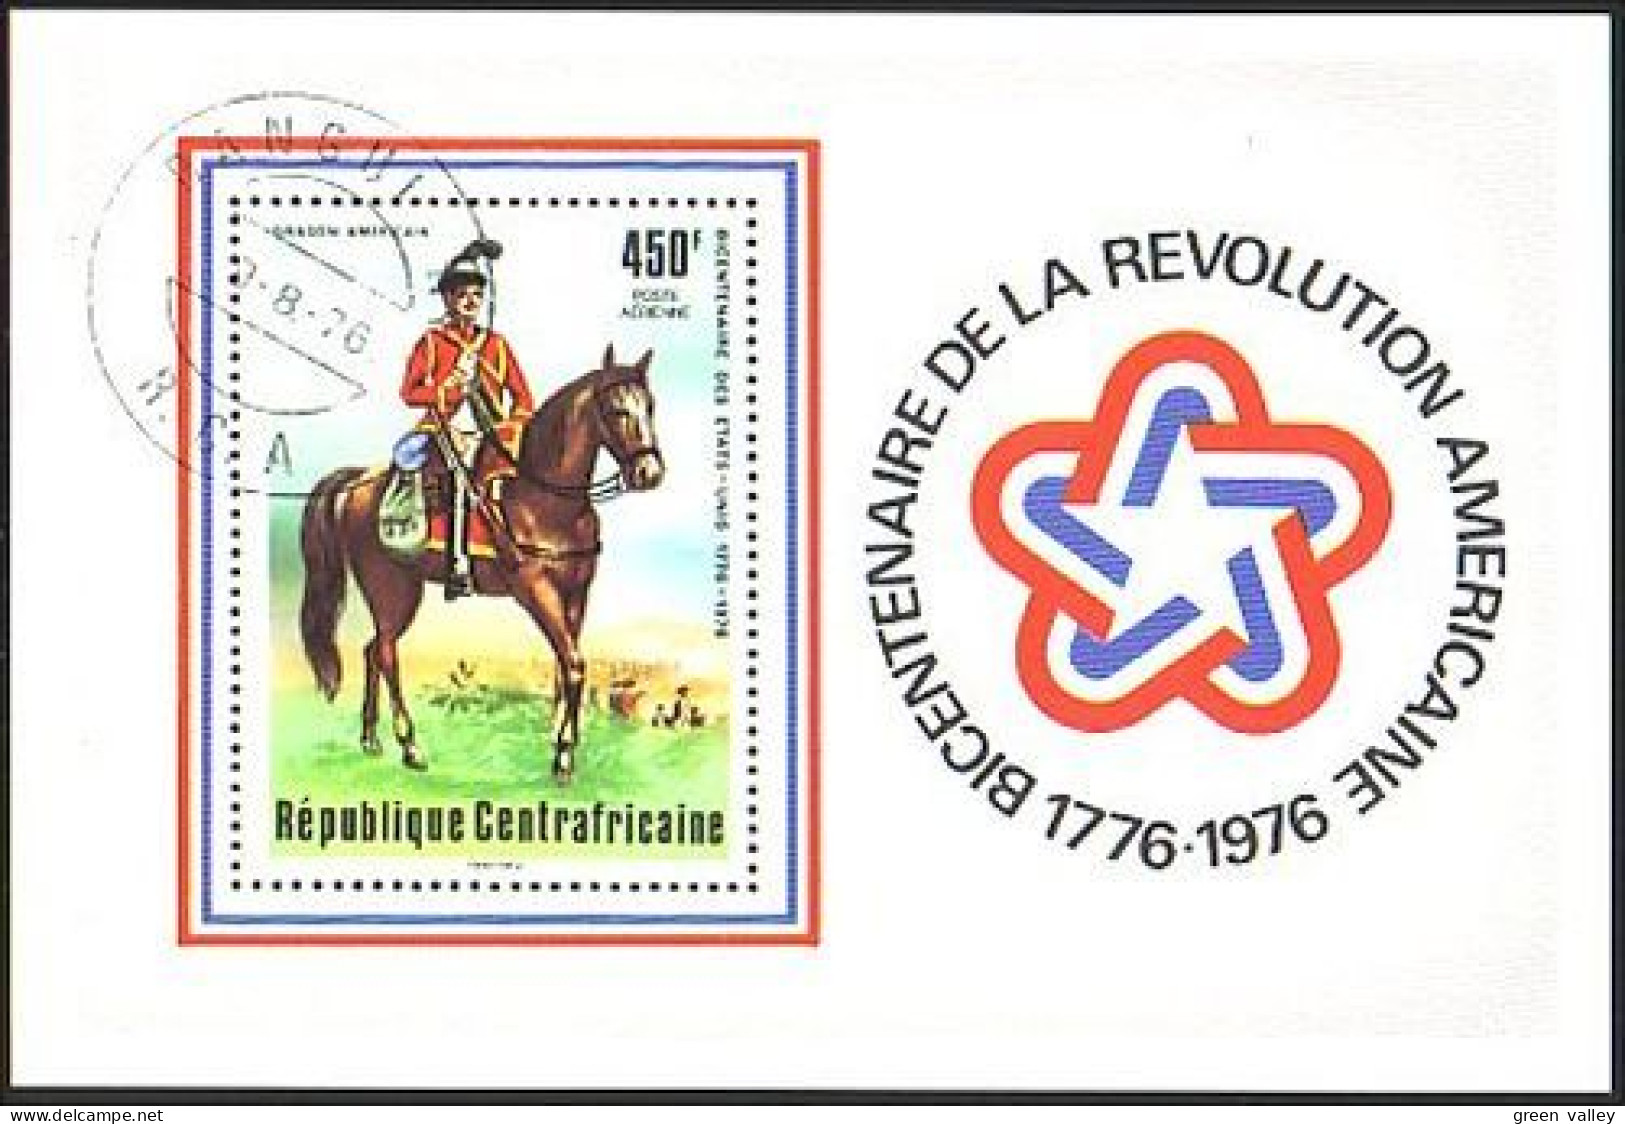 Centrafrique Revolution Americaine (A51-460b) - Unabhängigkeit USA